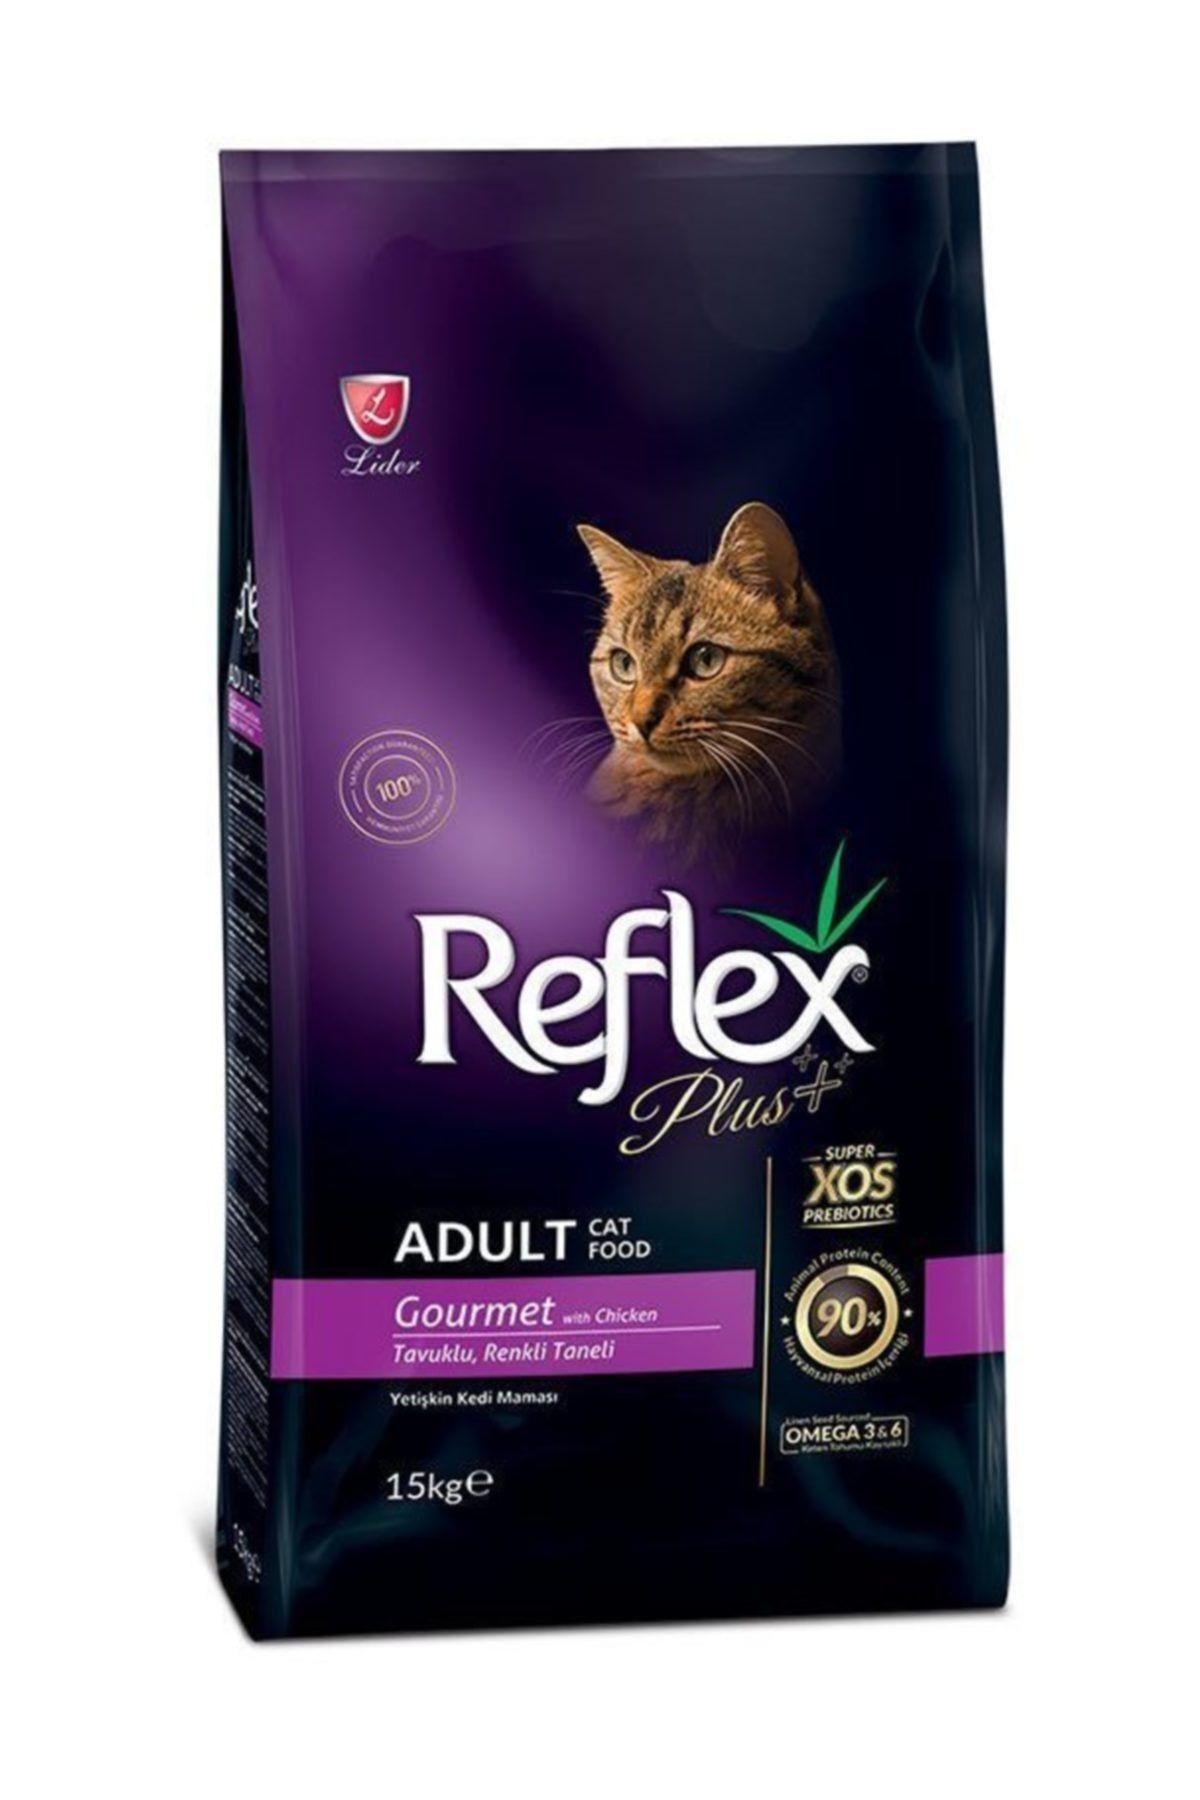 Reflex Plus Tavuklu Renkli Taneli Yetişkin Kedi Maması 15kg.